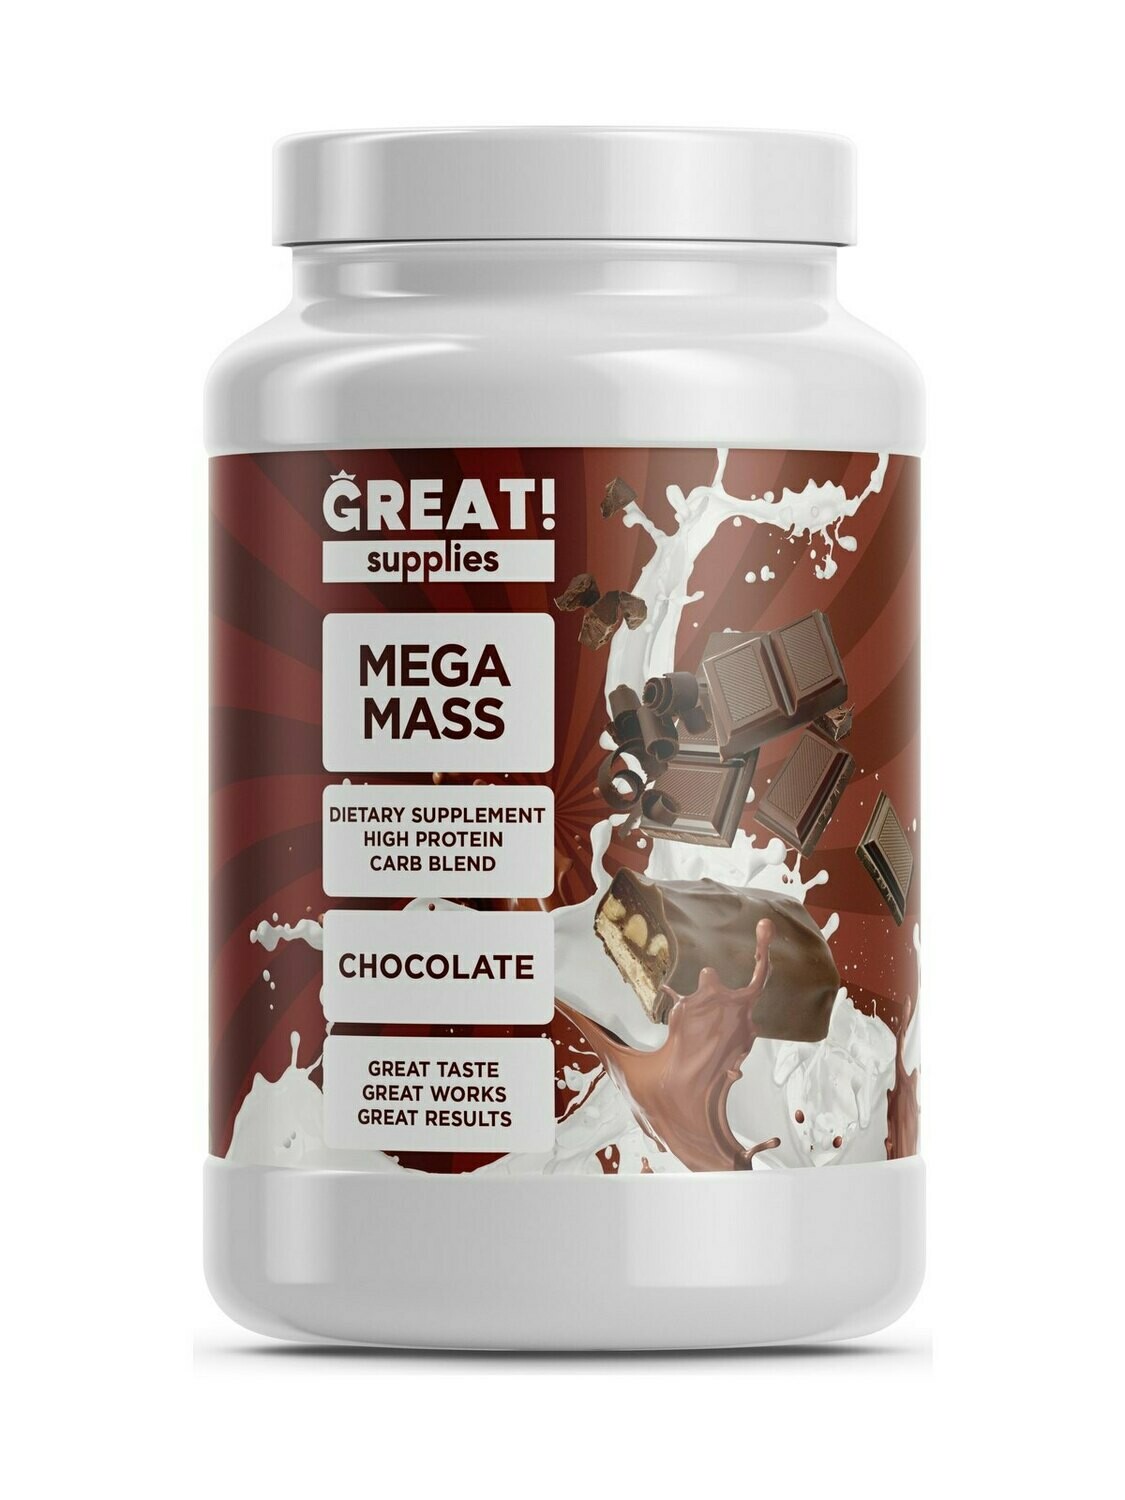 Гейнер Mega Mass вкус Шоколад от Great Supplies 2000гр, 20 порций купить банку